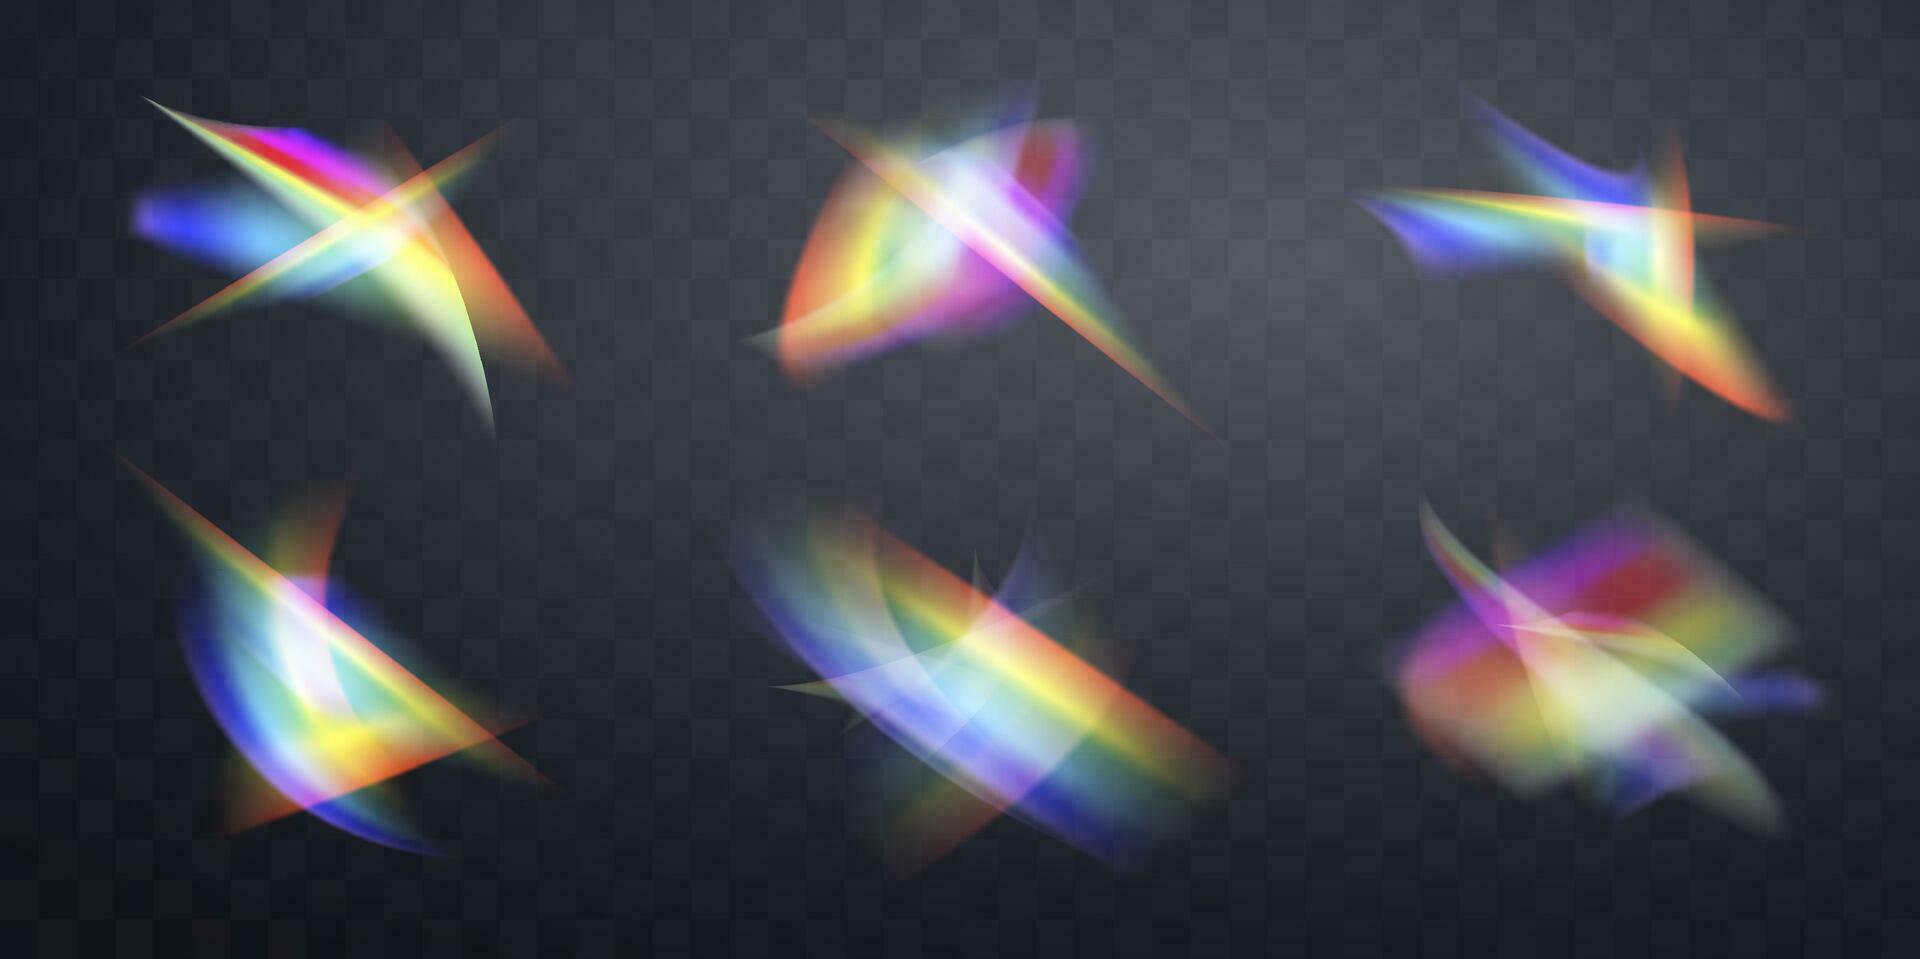 borrado arco Iris refração sobreposição efeito definir. luz lente prisma efeito. holográfico reflexão, cristal flare vazamento sombra overlay. vetor abstrato ilustração.